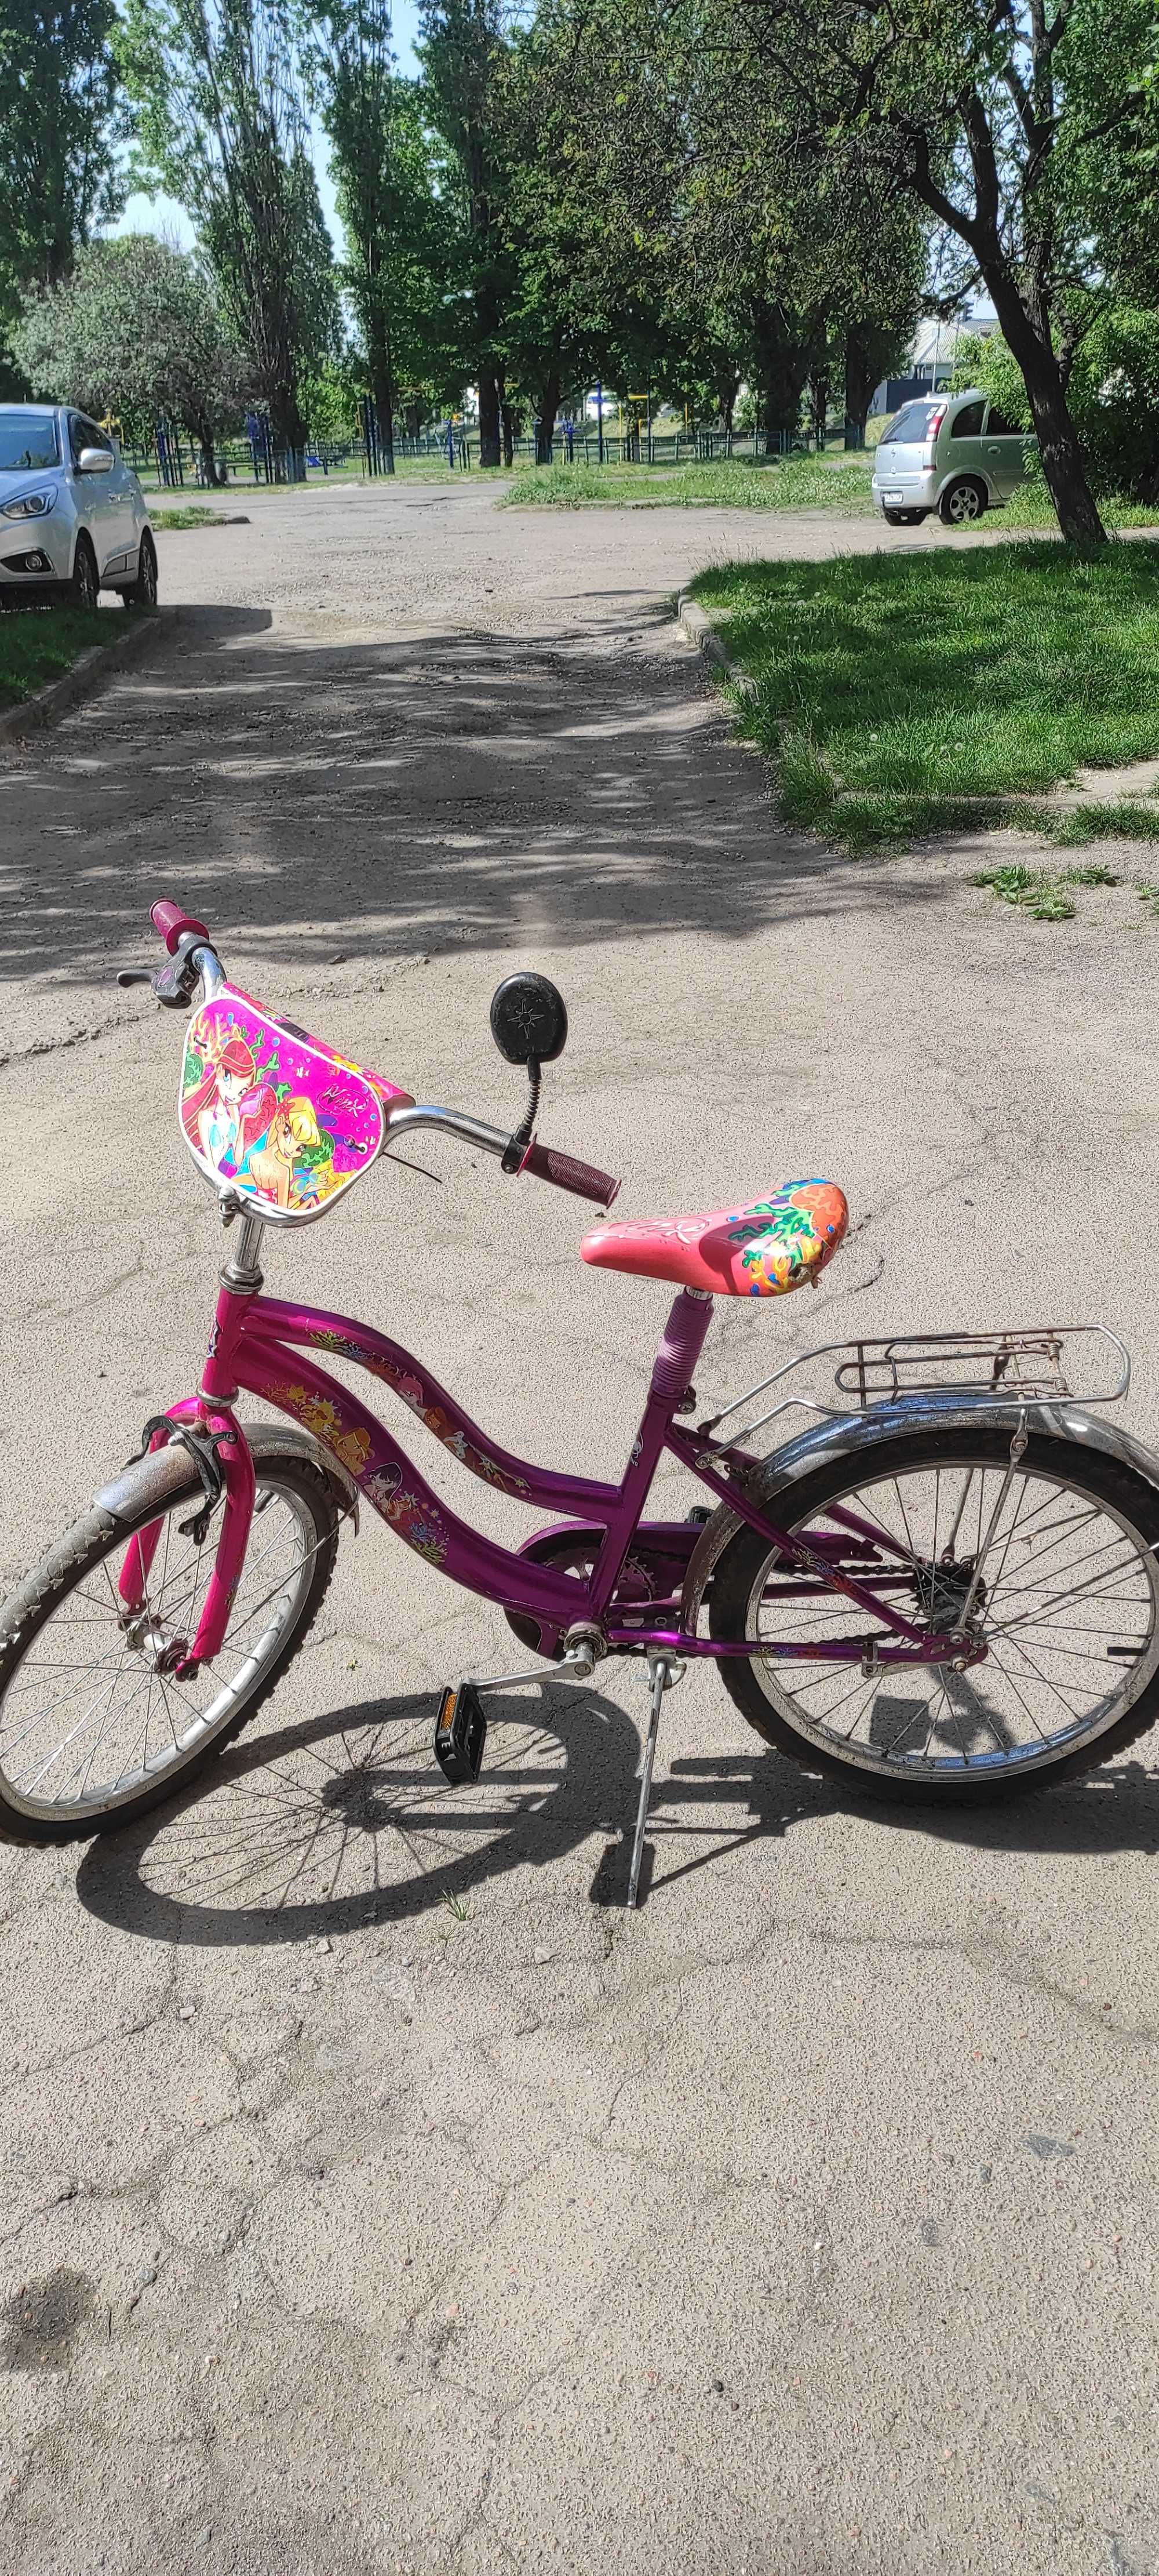 Дитячий велосипед для дівчаток з логотипом мультфільму "Вінкс"